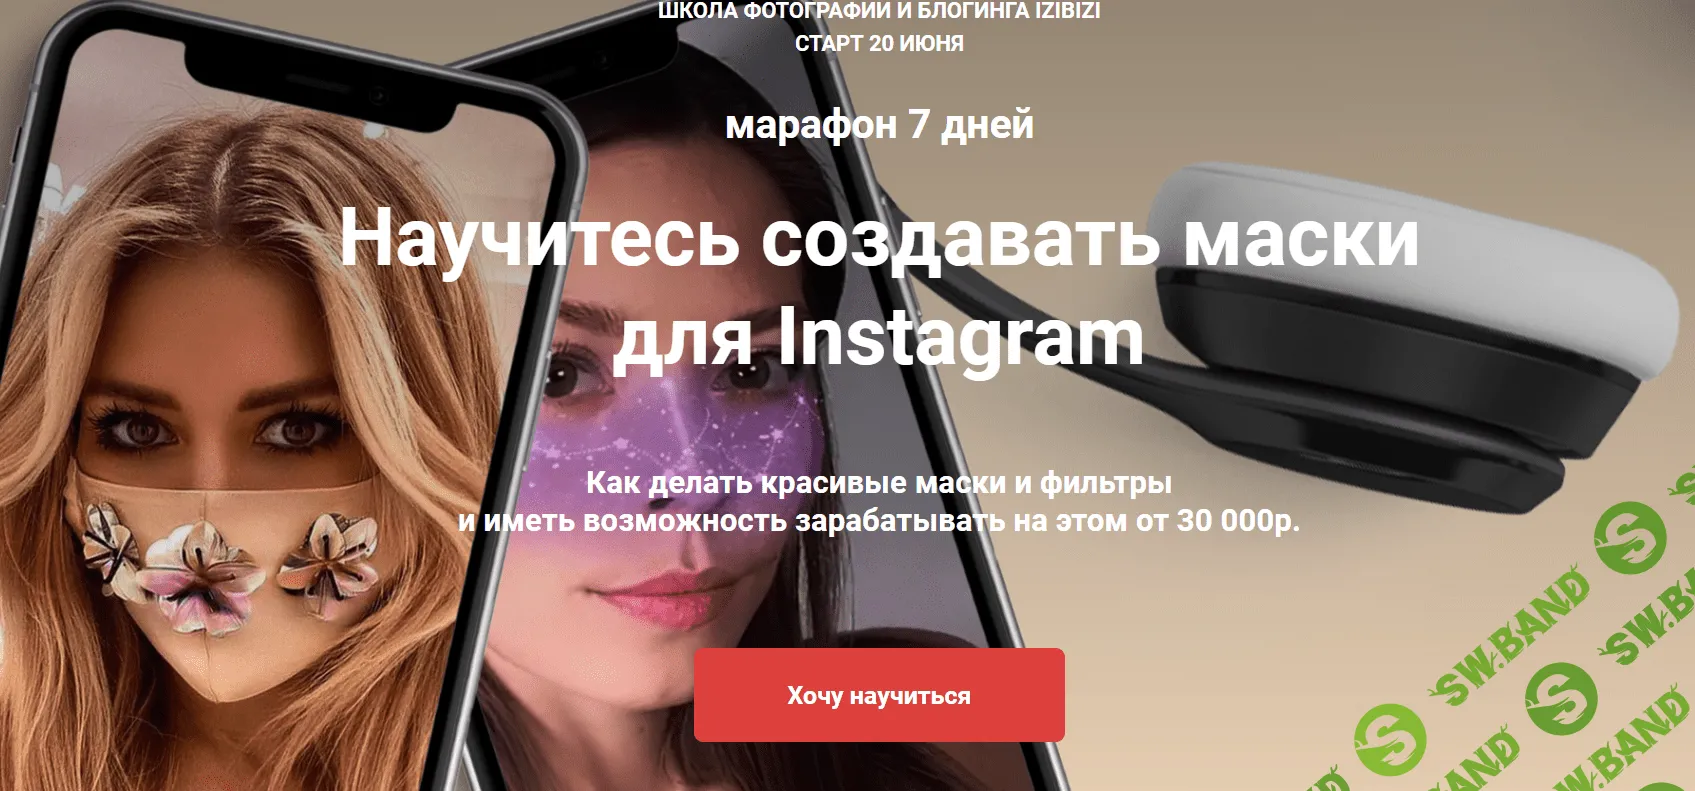 [Дмитрий Леоненко] Научитесь создавать маски для Instagram (2020)